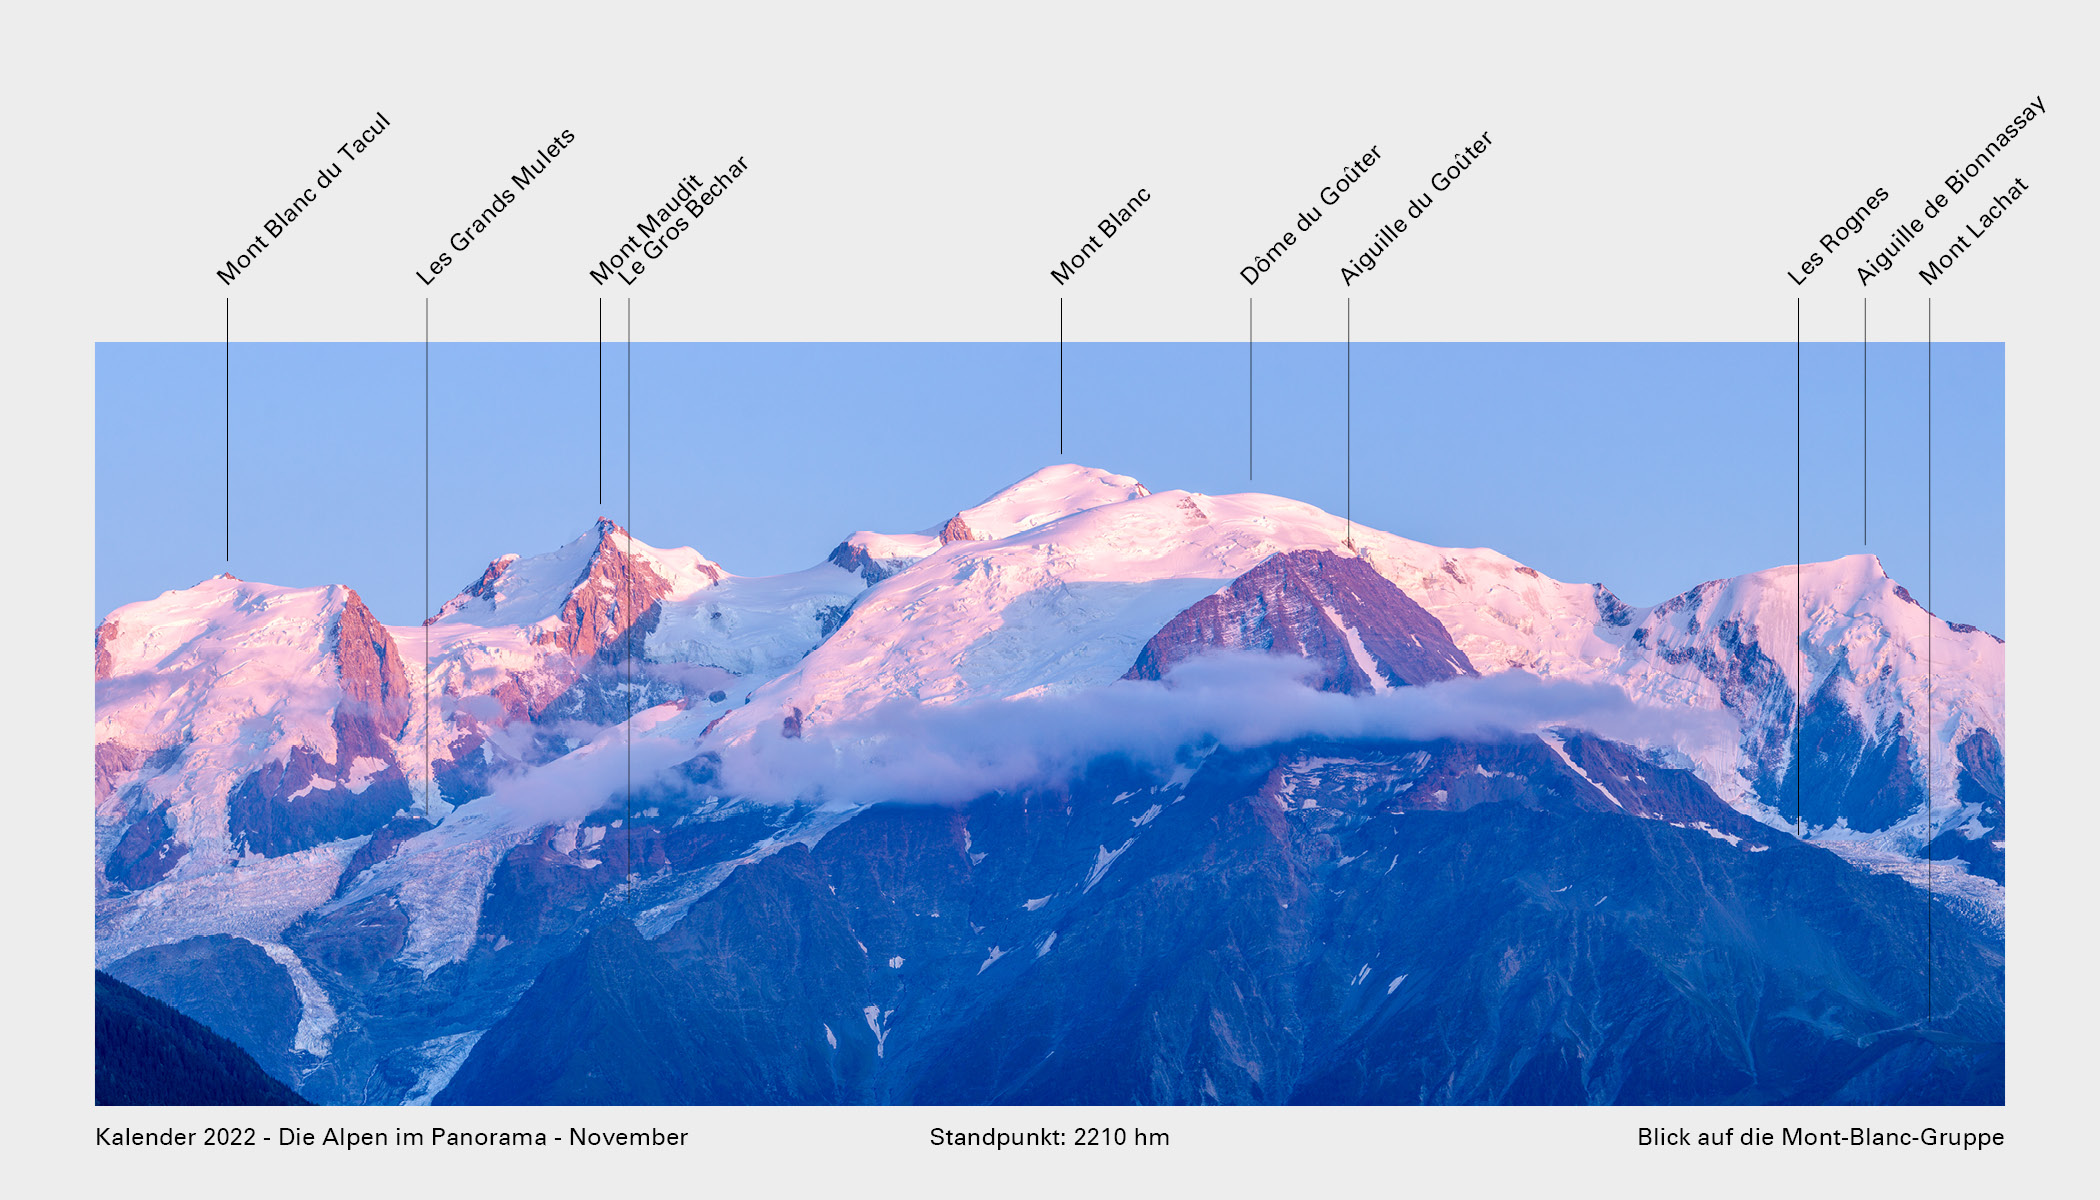 Kalender_2022_Die_Alpen_im_Panorama_Gipfel_11